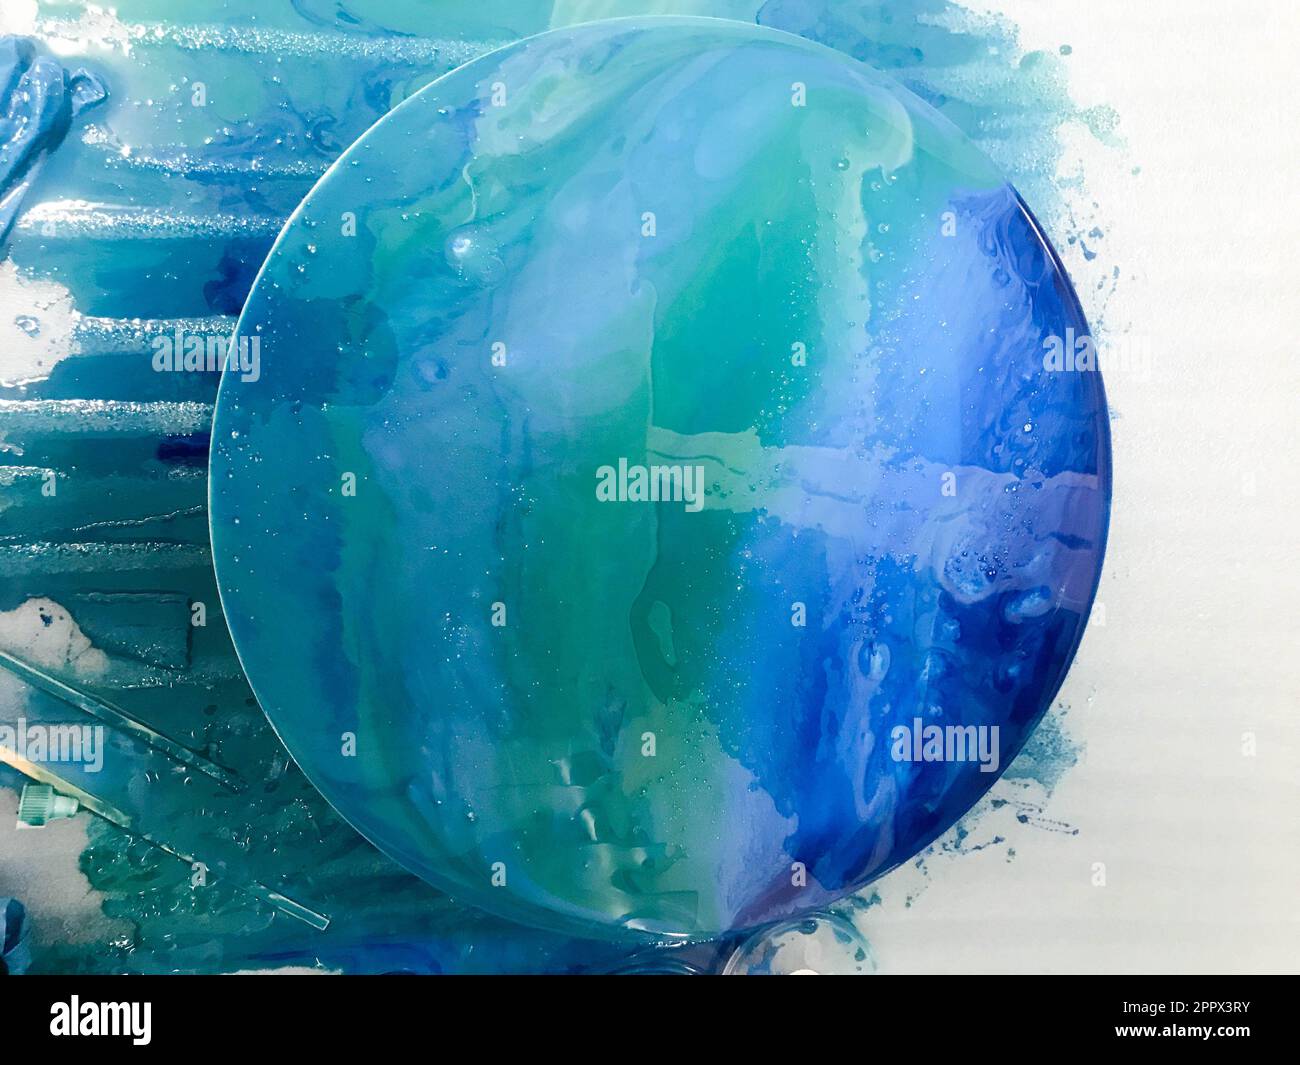 immagine lucida rotonda con l'immagine della superficie marina di blu con bolle utilizzando la tecnica di disegno con resina epossidica. una foto con getti i Foto Stock